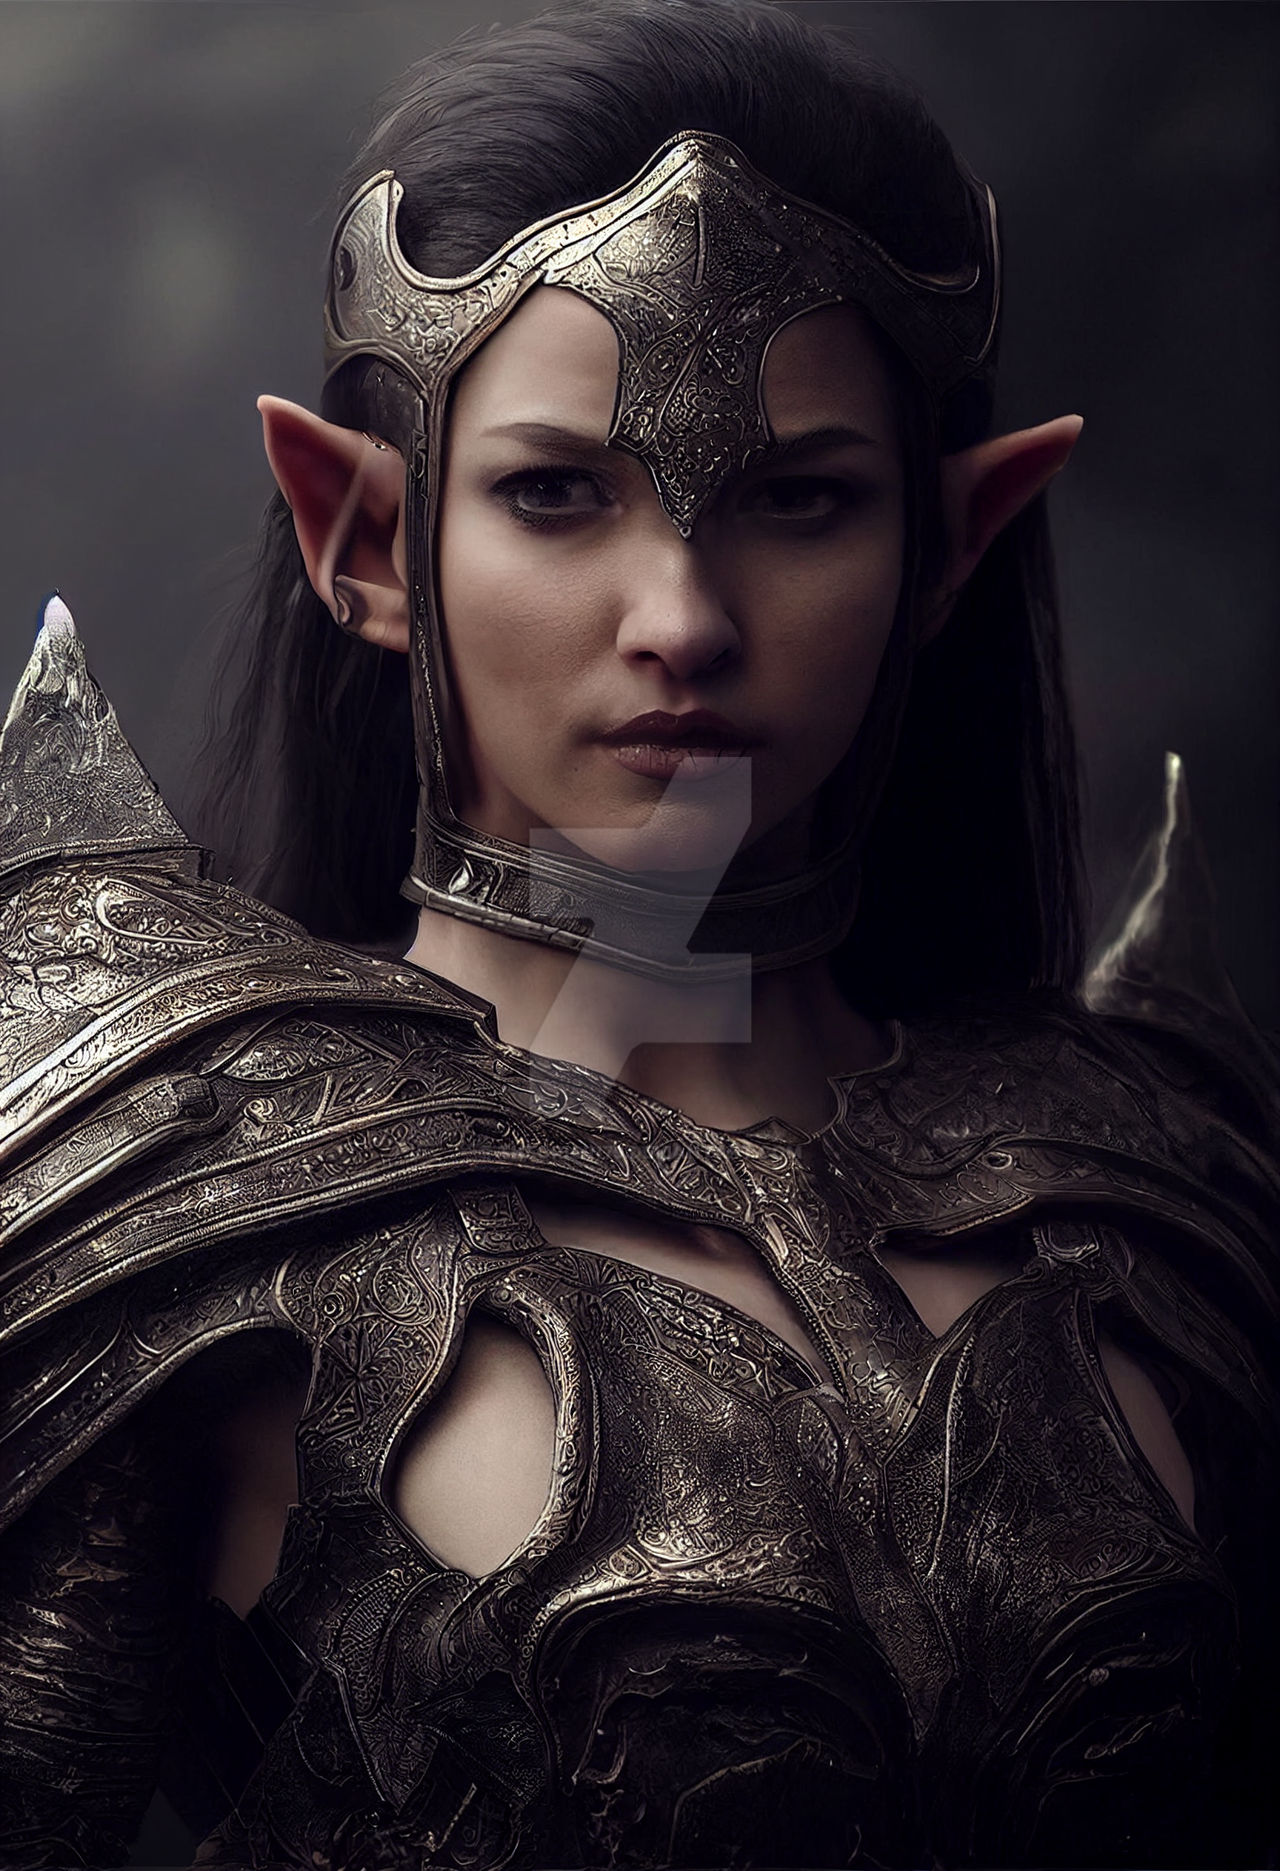 Character Artwork - dark elf female warrior by TheOrigin79 on DeviantArt